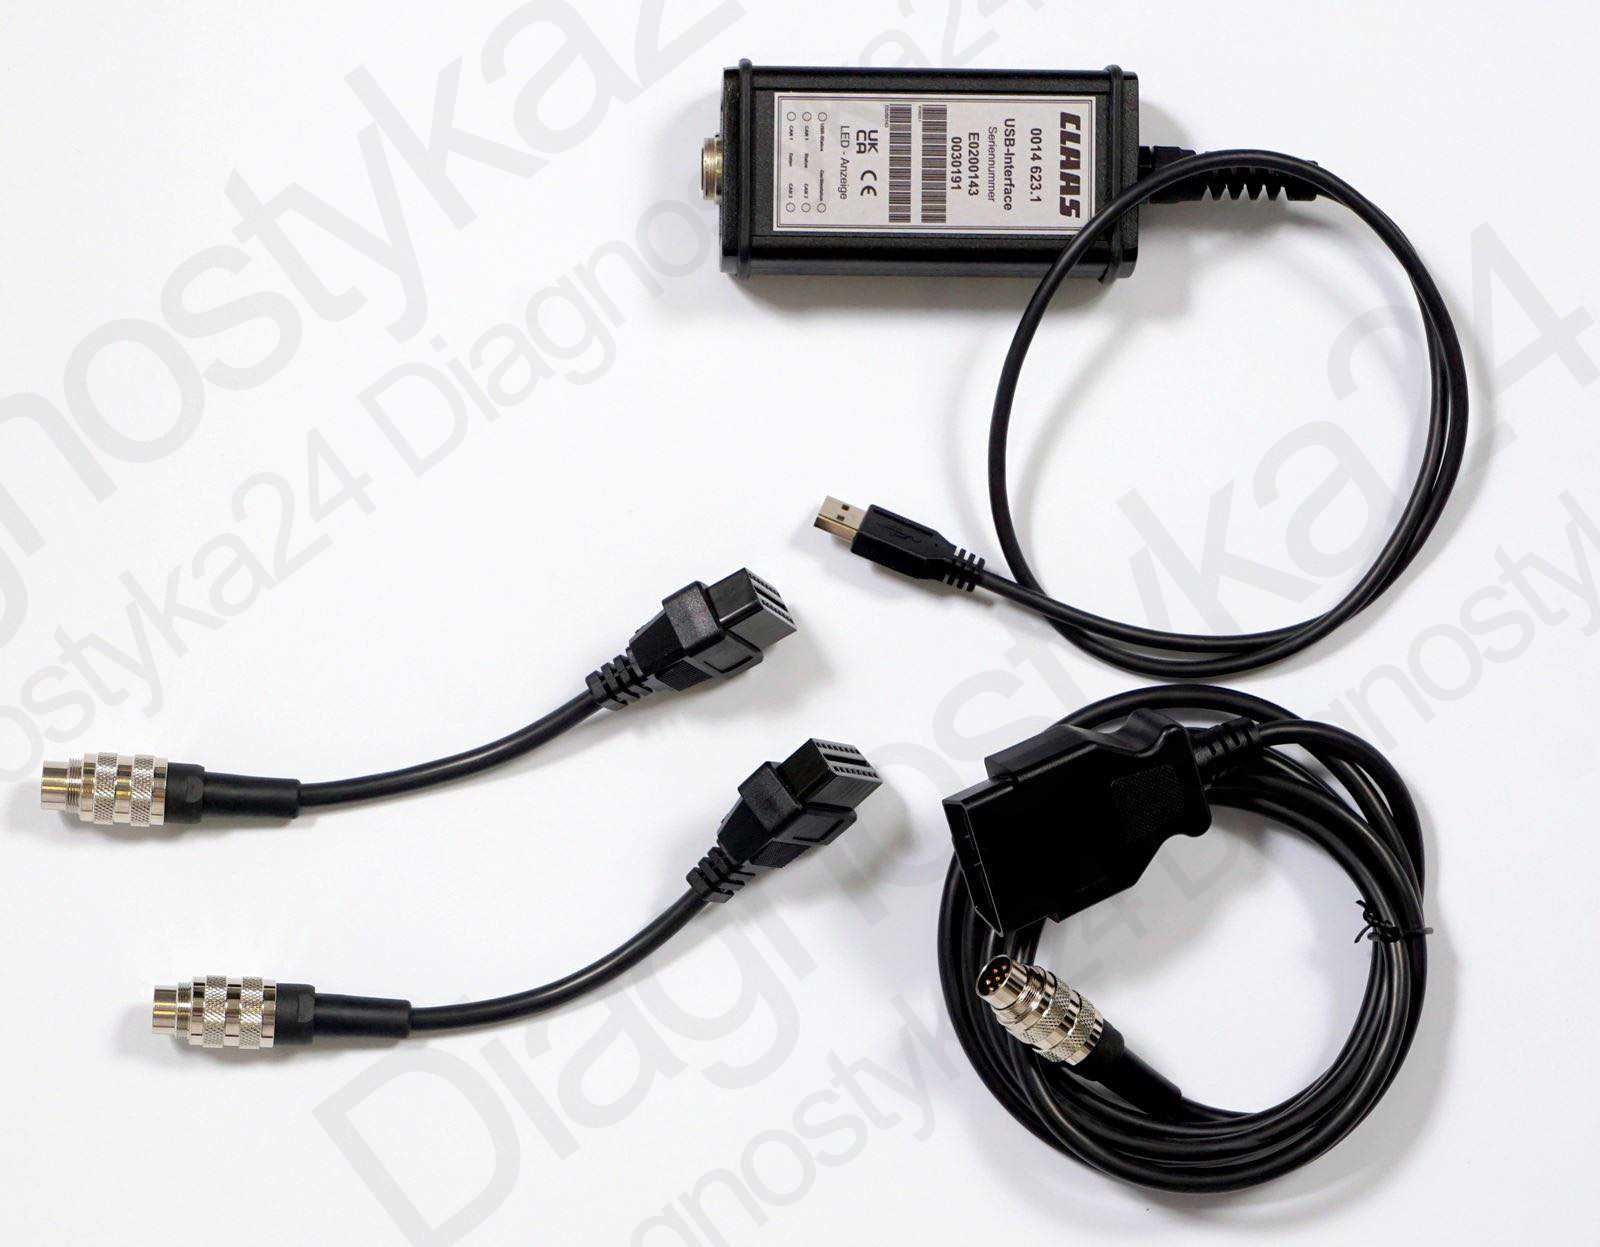 ZESTAW Claas CAN USB przygotowany laptop Diagnostyka Maszyny Rolnicze